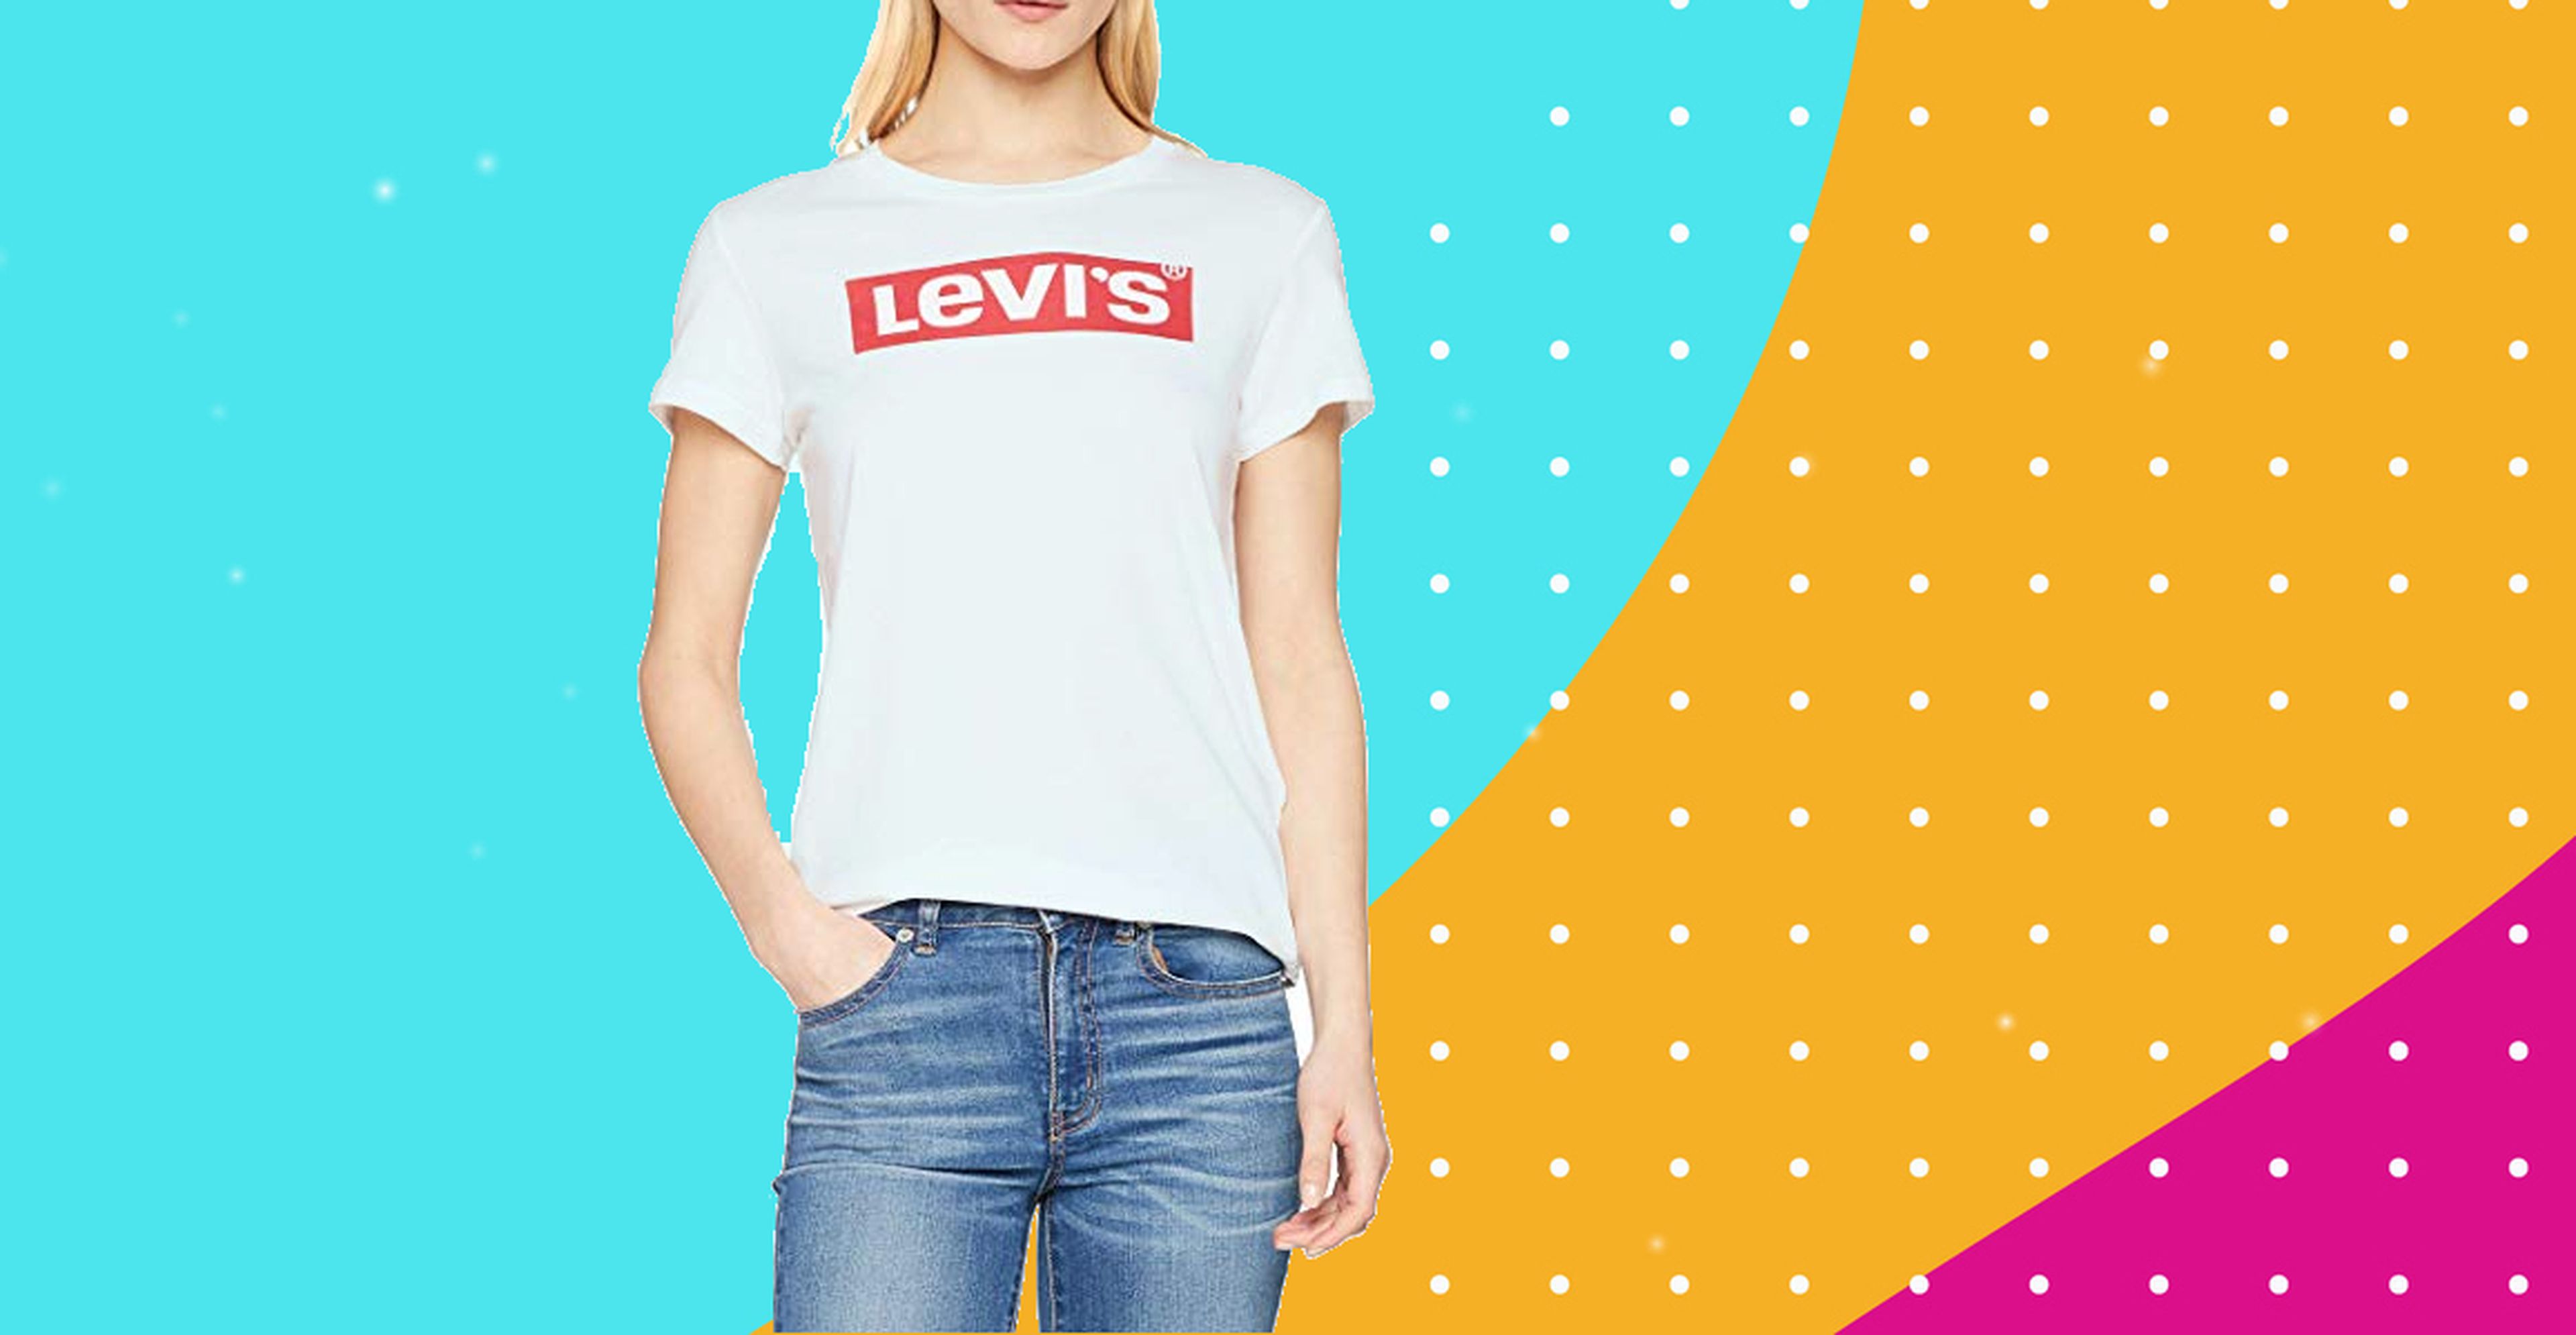 Oferta camiseta clásica Levi's a menos de euros | Business España